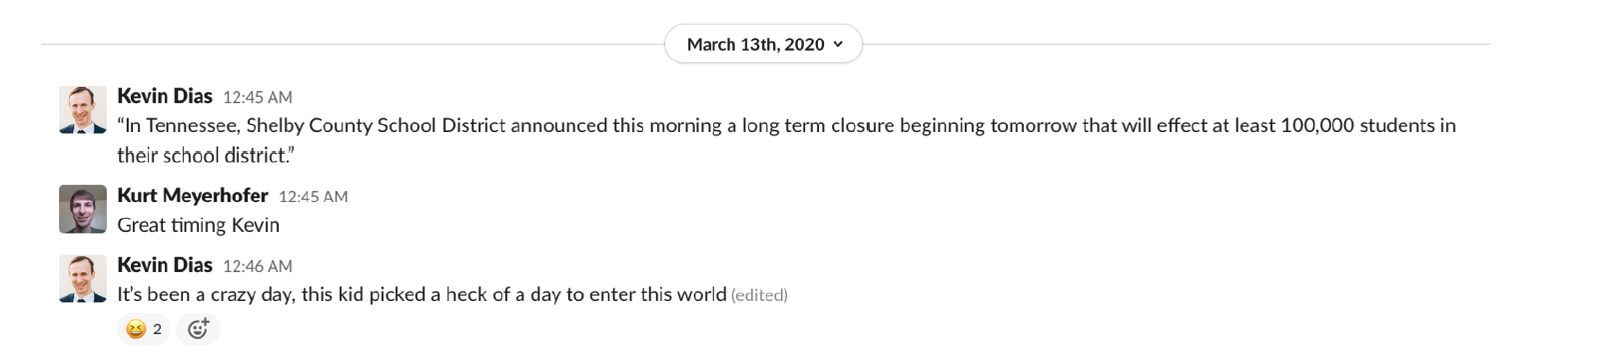 March 13th, 2020: Slack